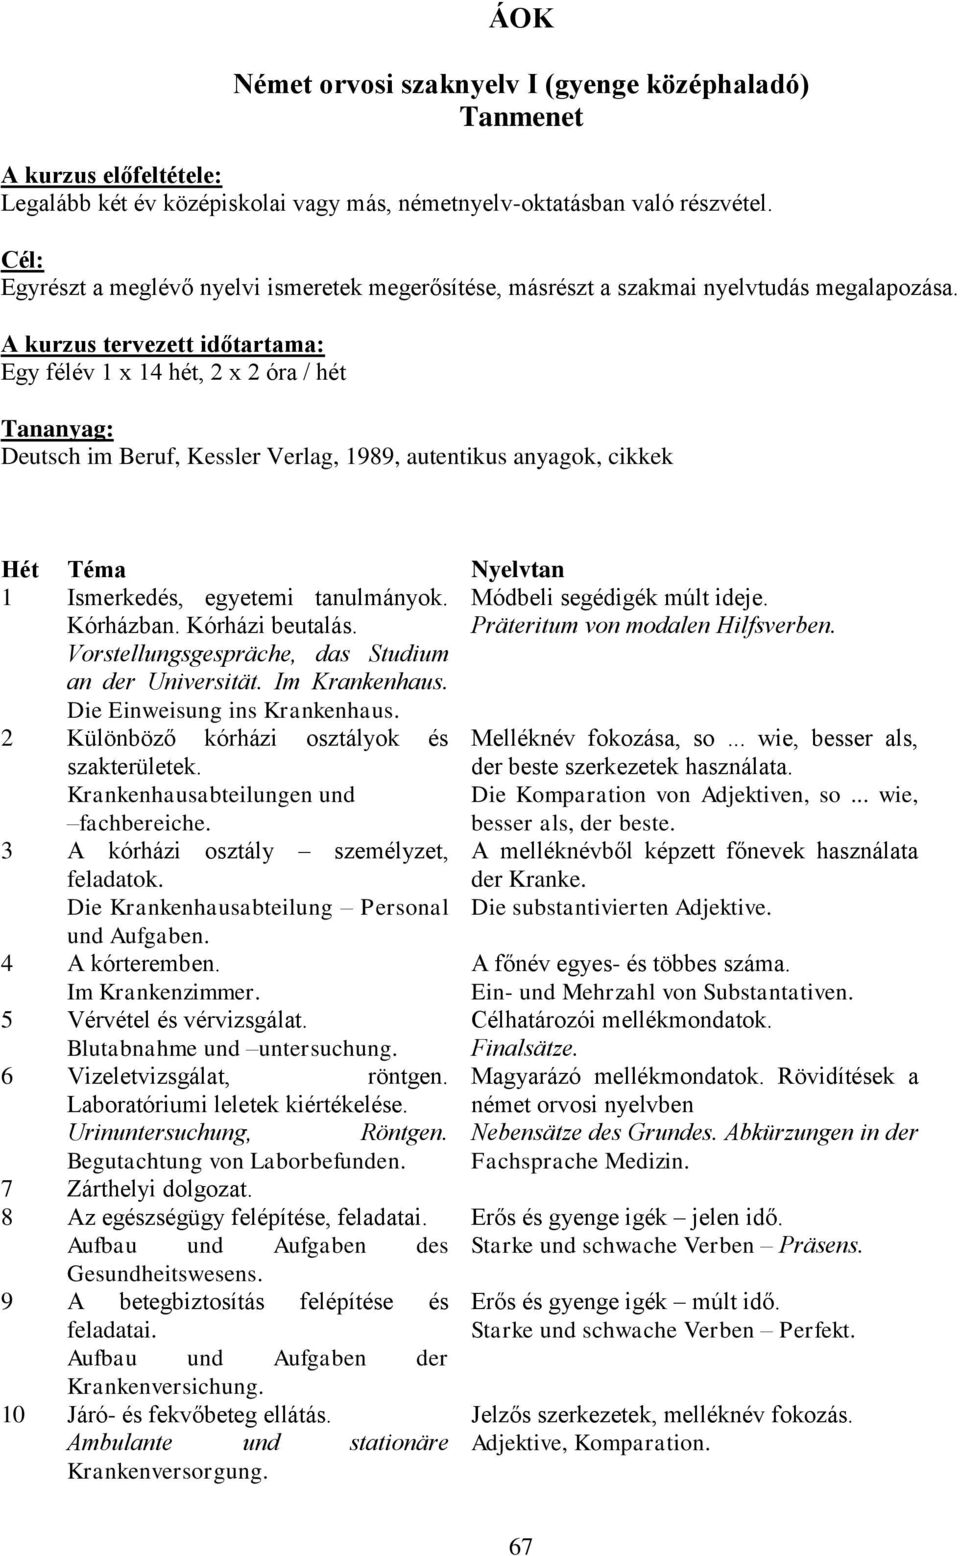 A kurzus tervezett időtartama: Egy félév 1 x 14 hét, 2 x 2 óra / hét Tananyag: Deutsch im Beruf, Kessler Verlag, 1989, autentikus anyagok, cikkek Hét Téma Nyelvtan 1 Ismerkedés, egyetemi tanulmányok.